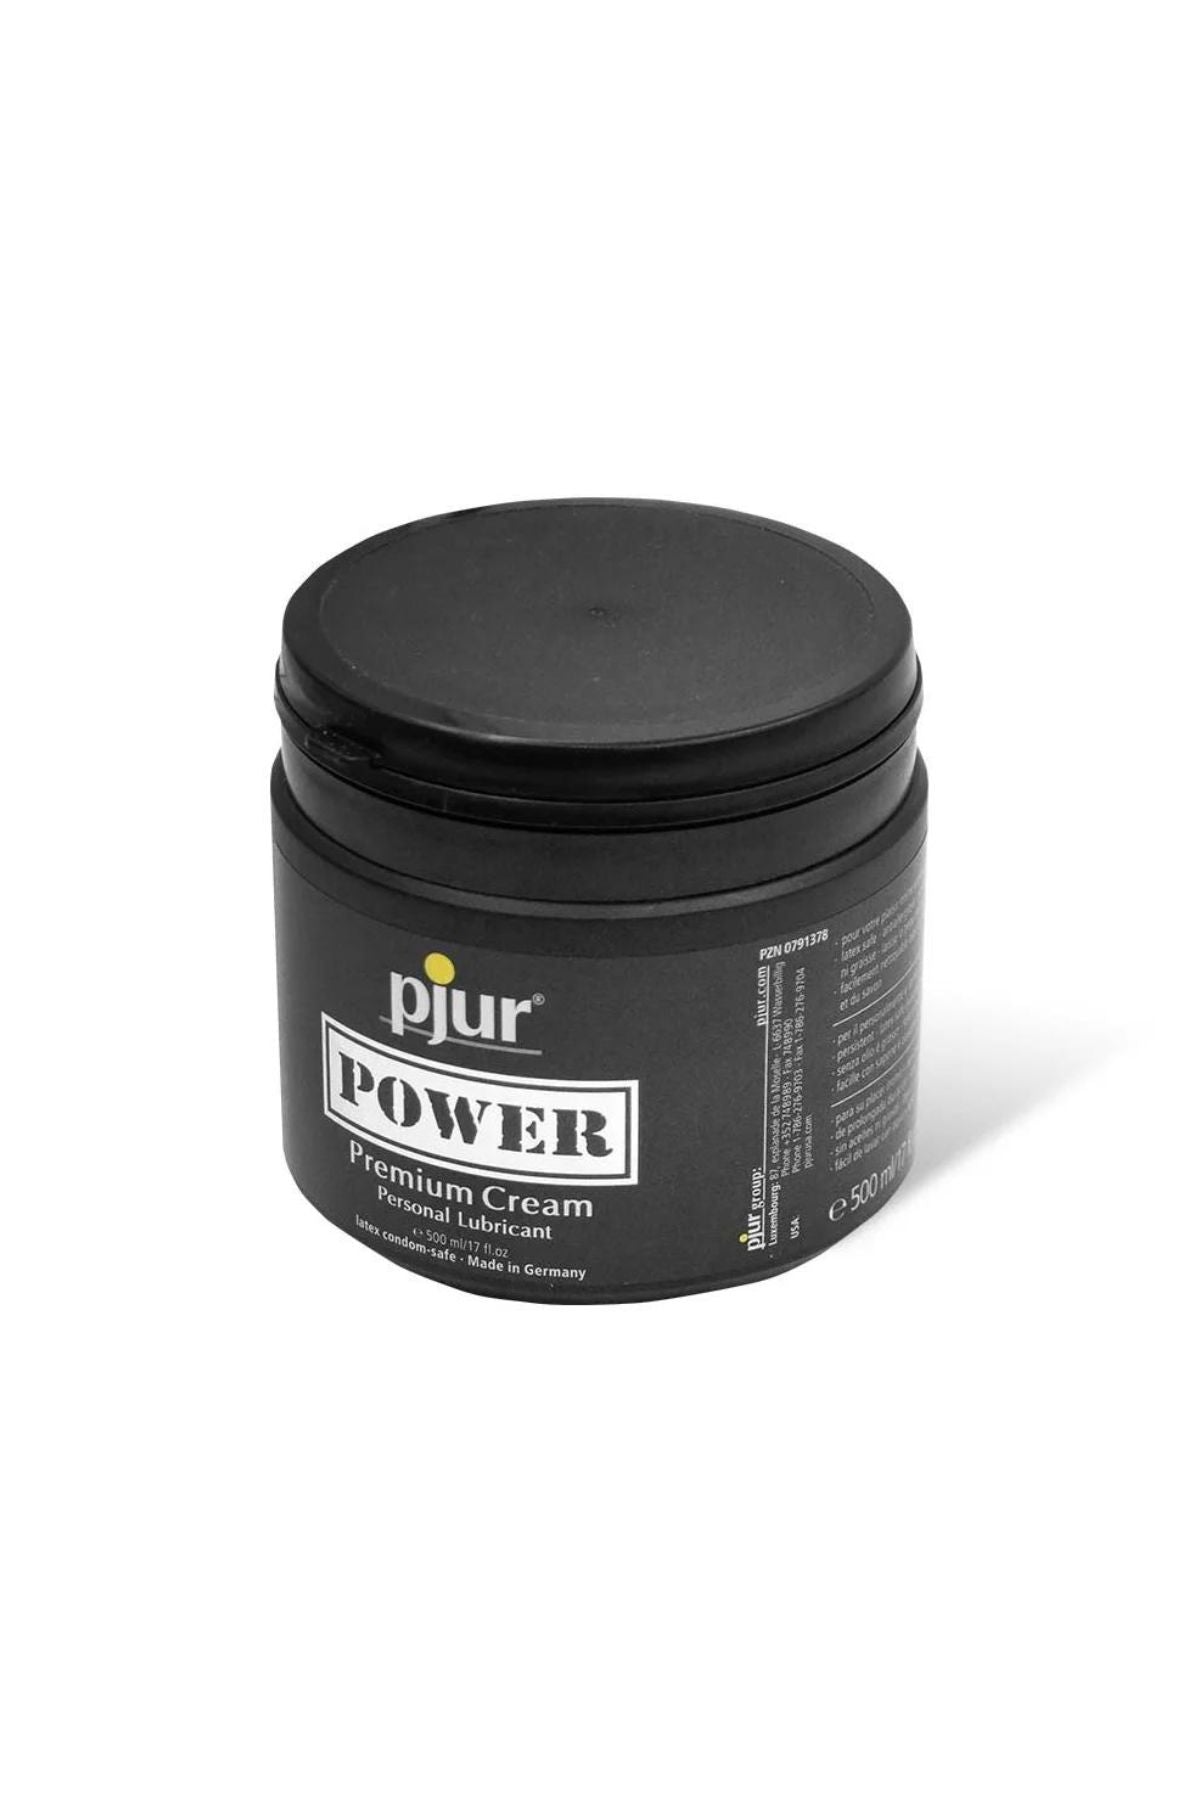 Power Premium Cream